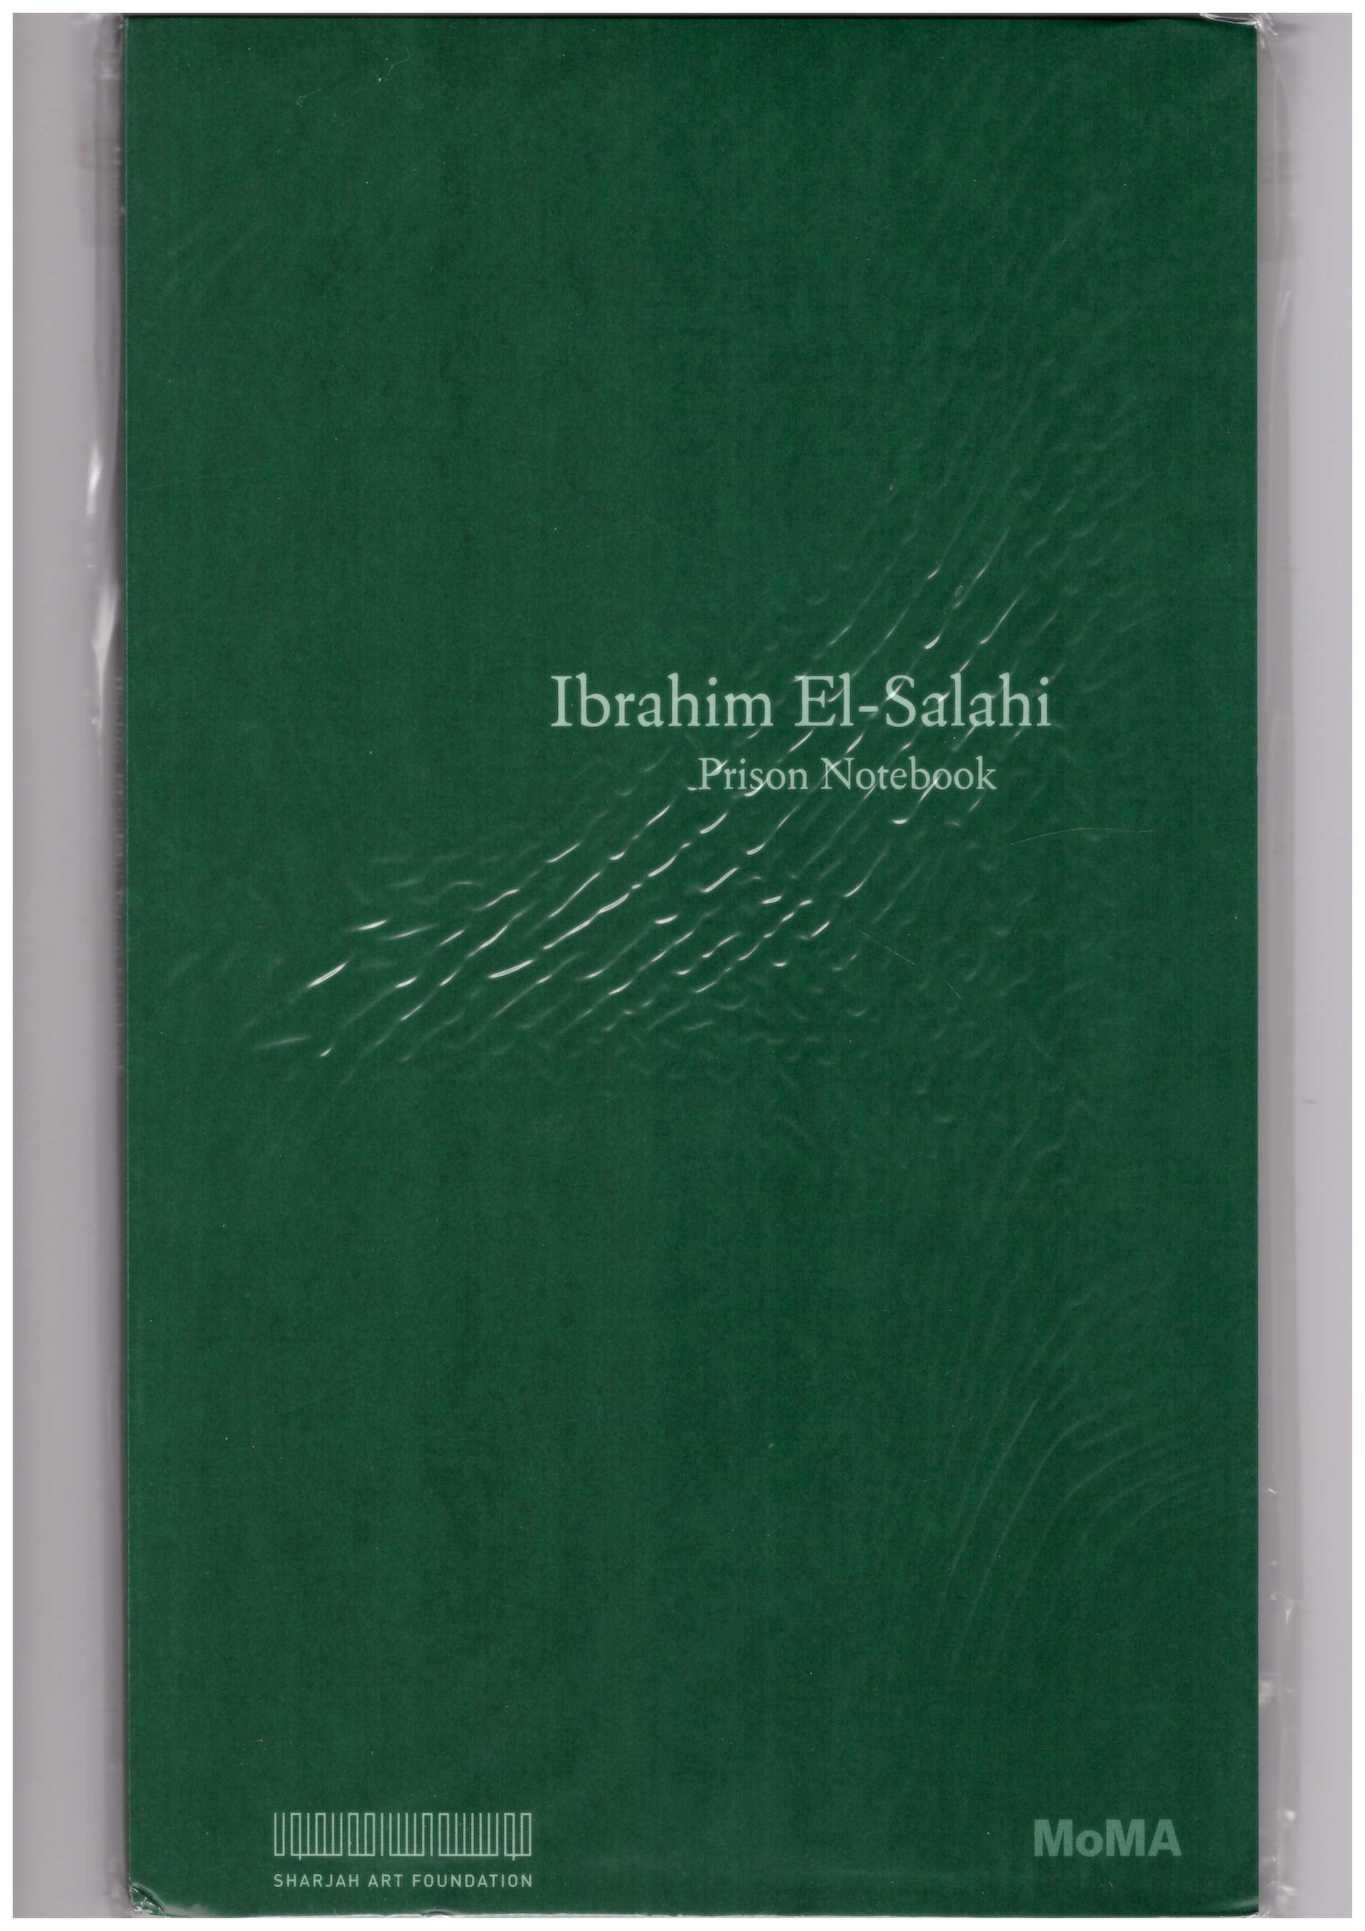 EL-SALAHI, Ibrahim; HASSAN, Salah M. (ed.) - Ibrahim El-Salahi: Prison Notebook